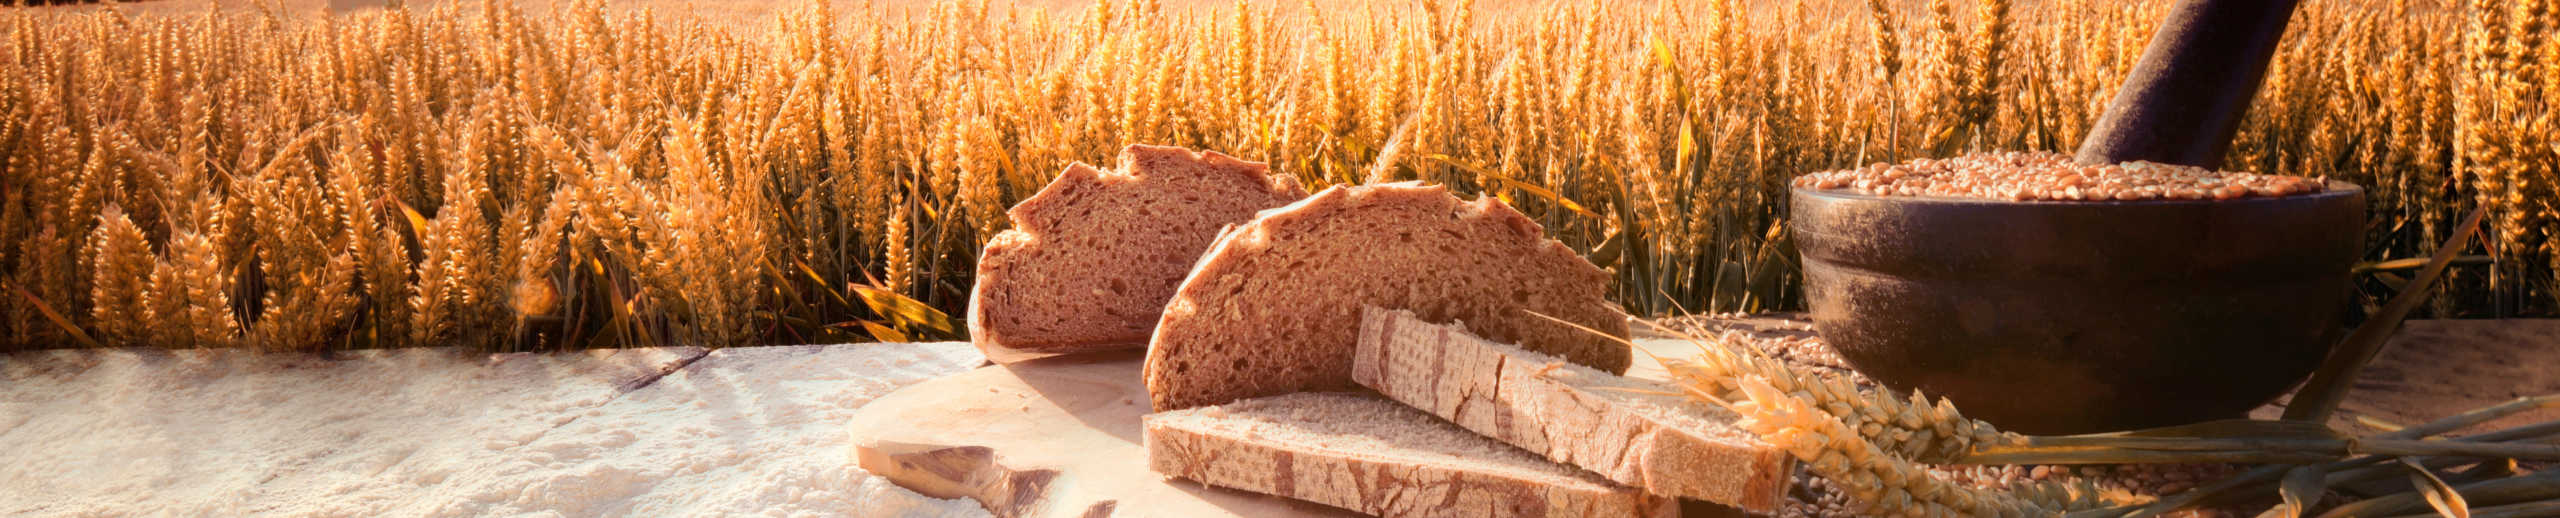 Brot vor Feld